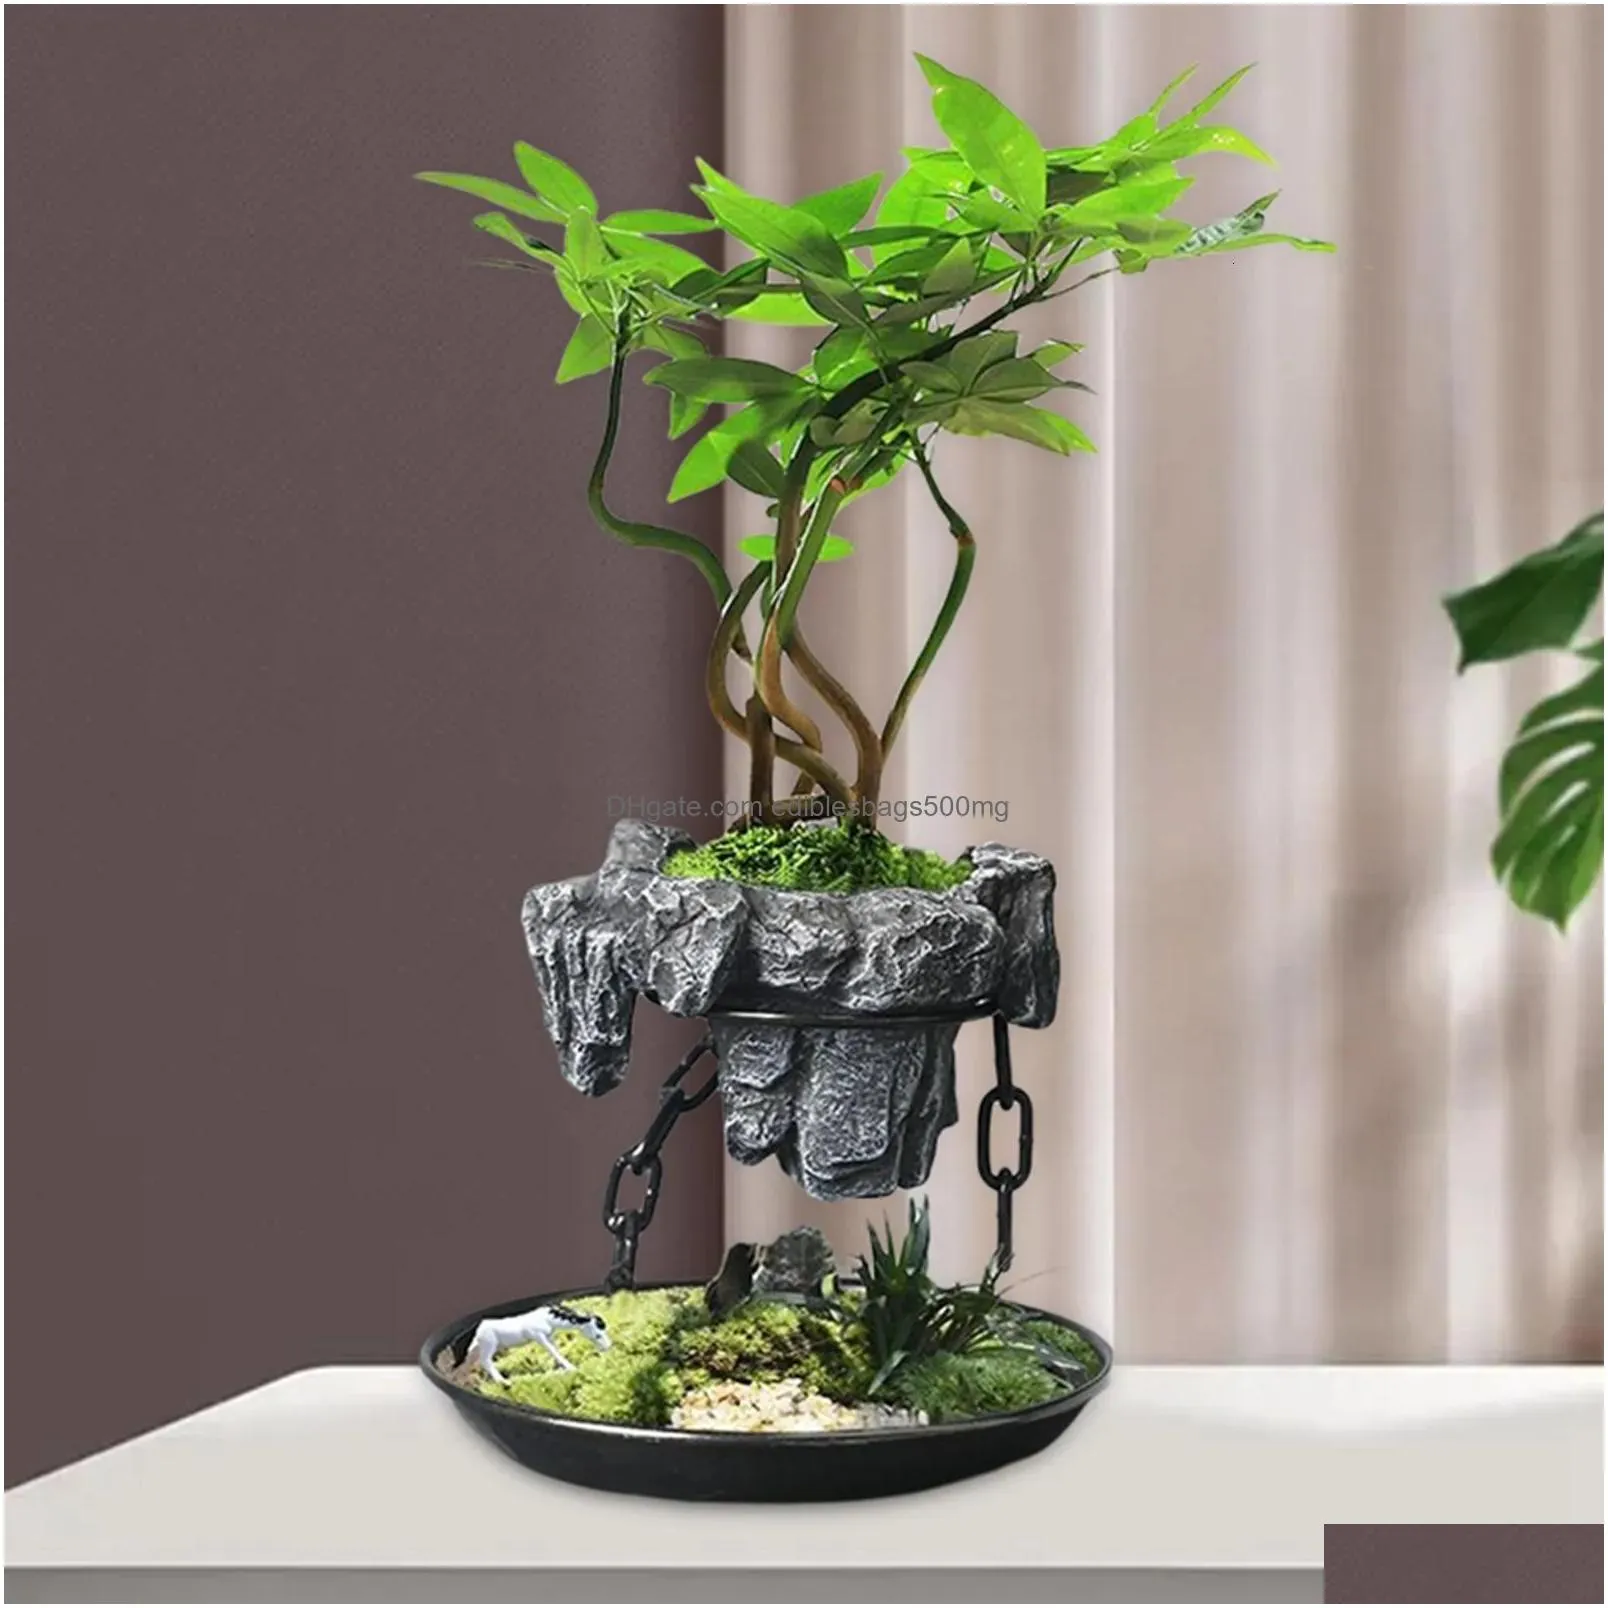 vases levitating air bonsai pot desktop flower garden planter indoor plant office succulent ornament for home decors 230603